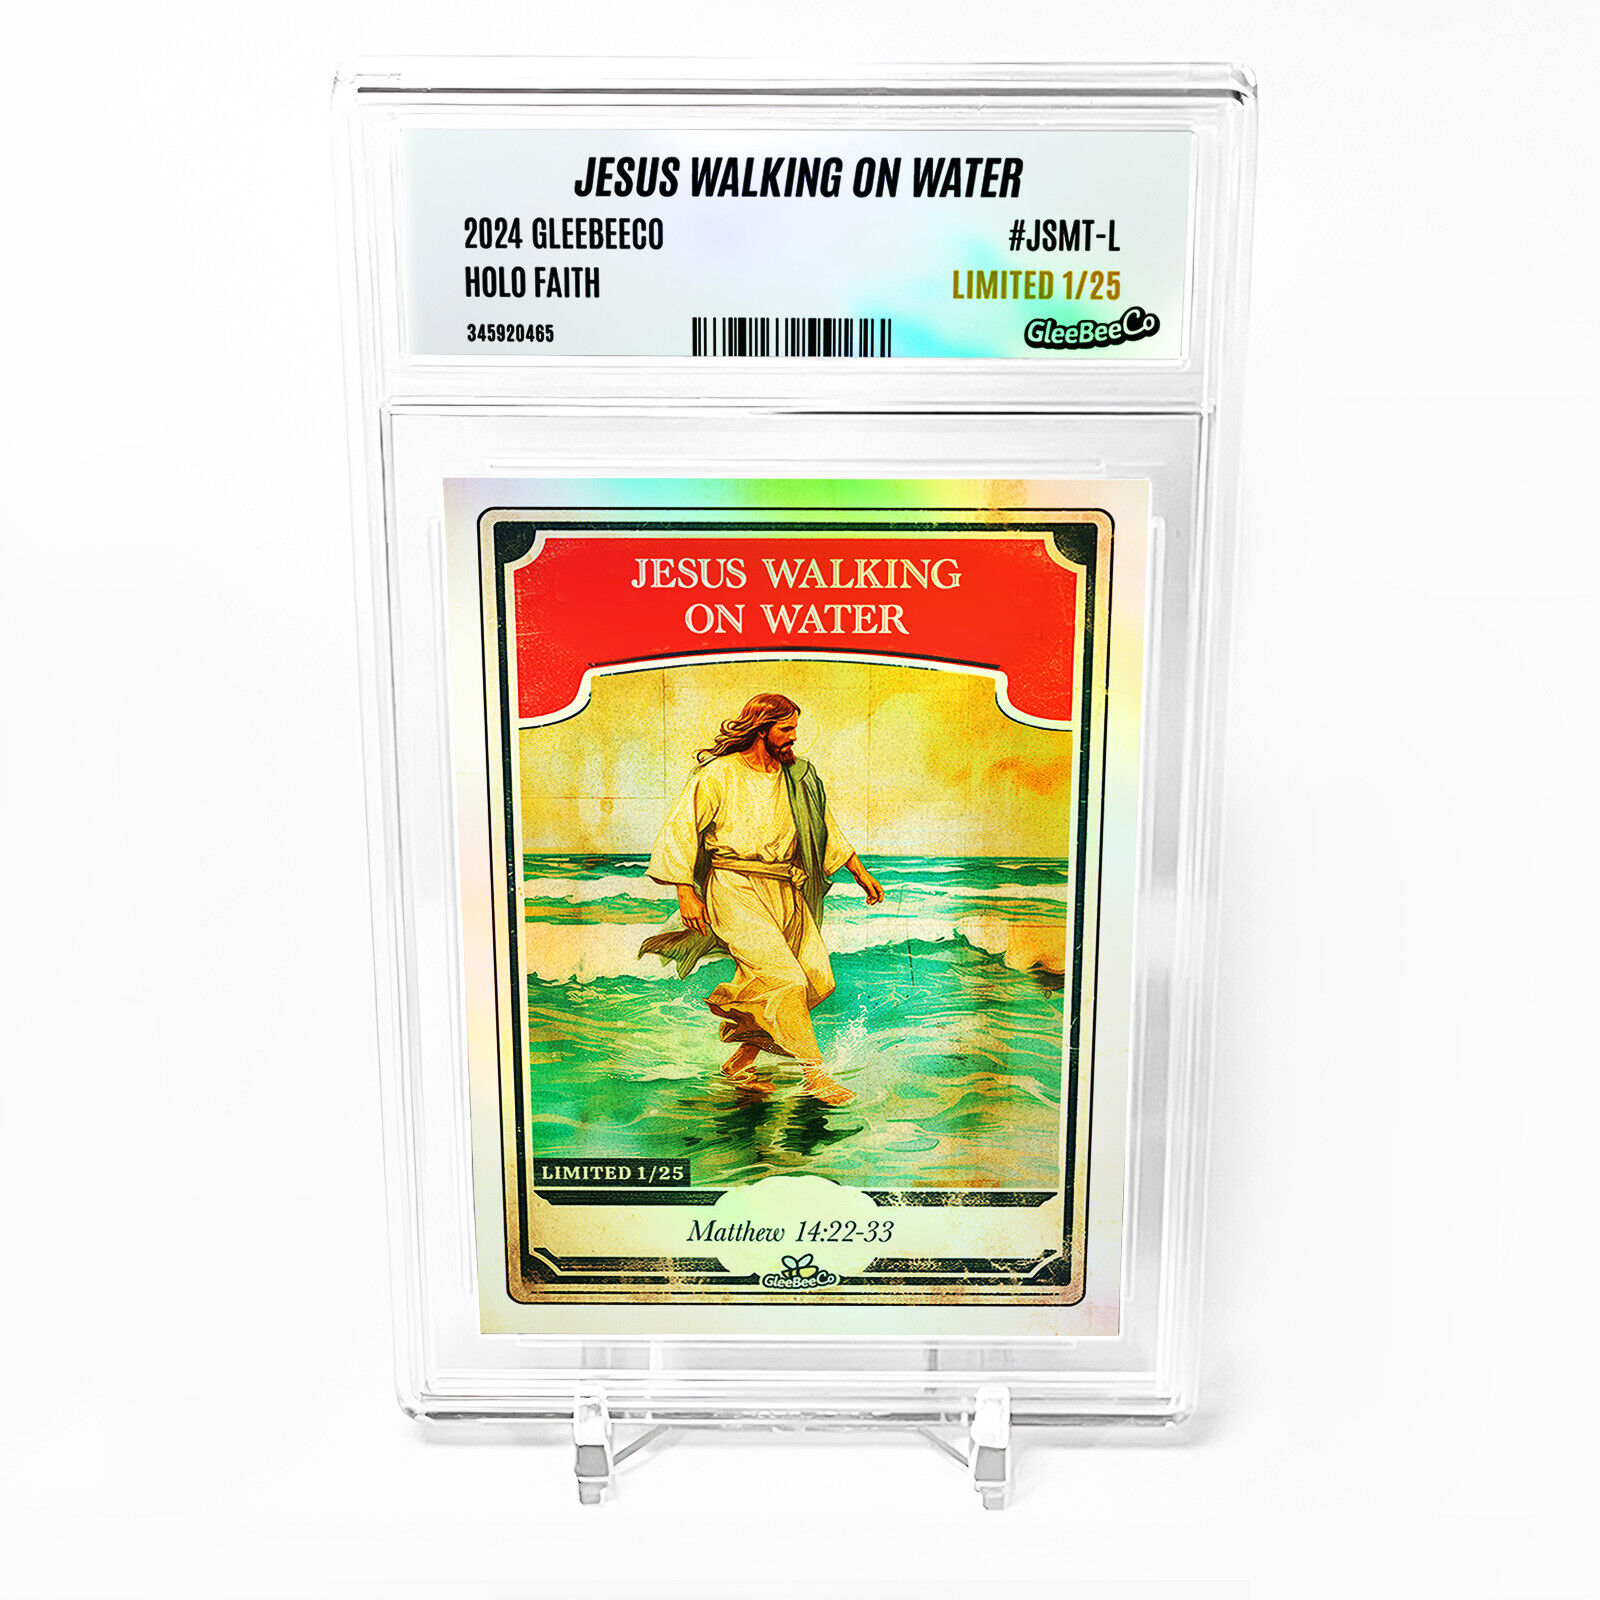 JESUS WALKING ON WATER Card 2024 GleeBeeCo Matthew 14:22-33 Holo #JSMT-L /25